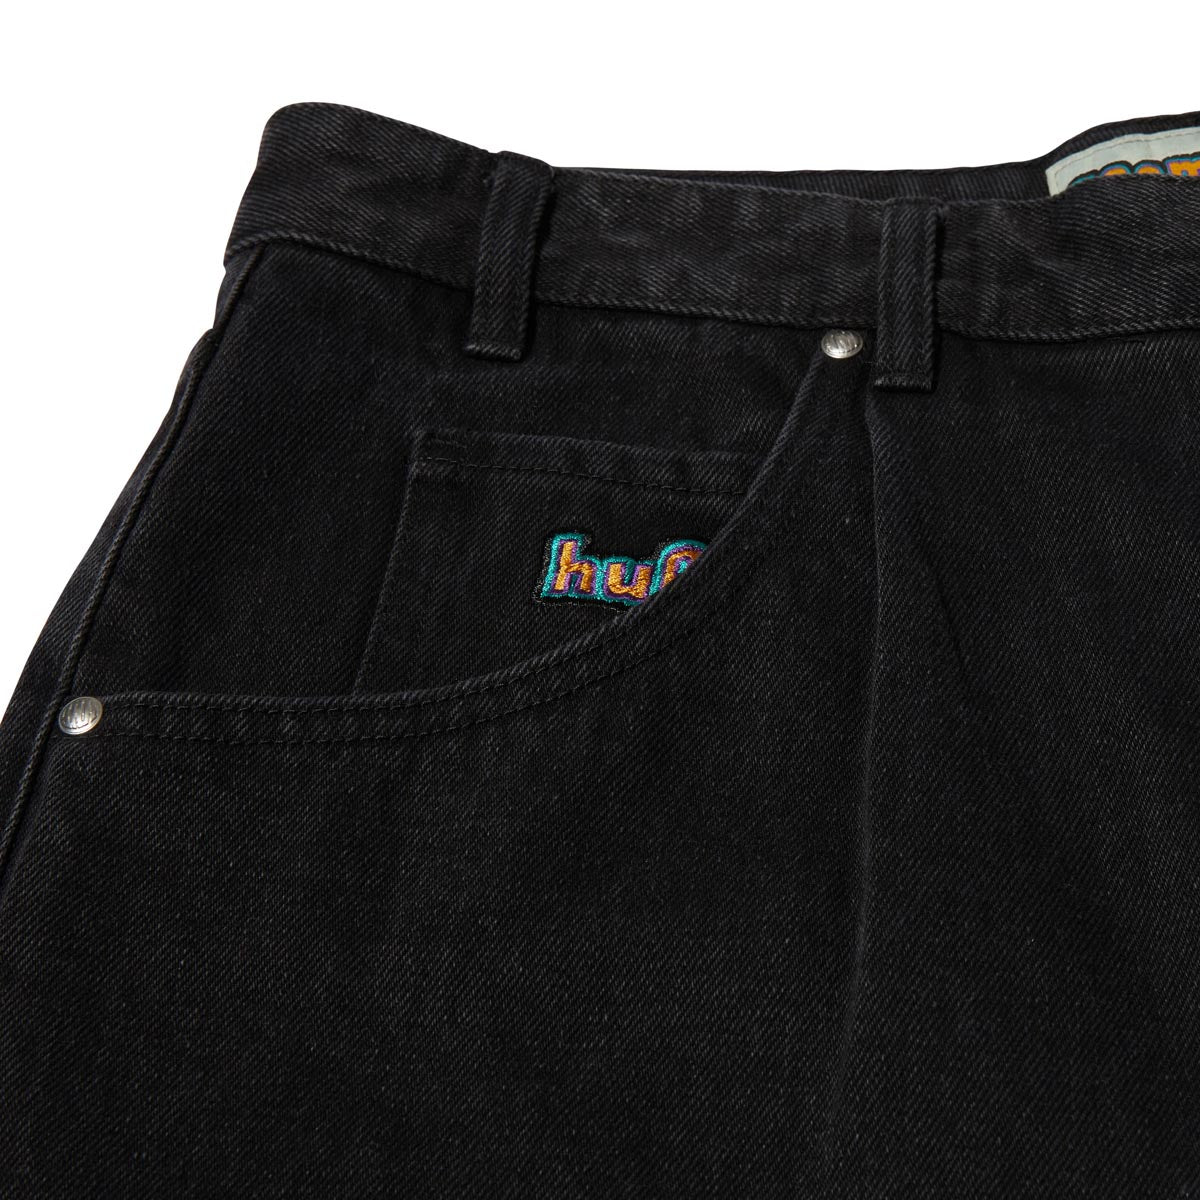 HUF Cromer Shorts - Washed Black image 3